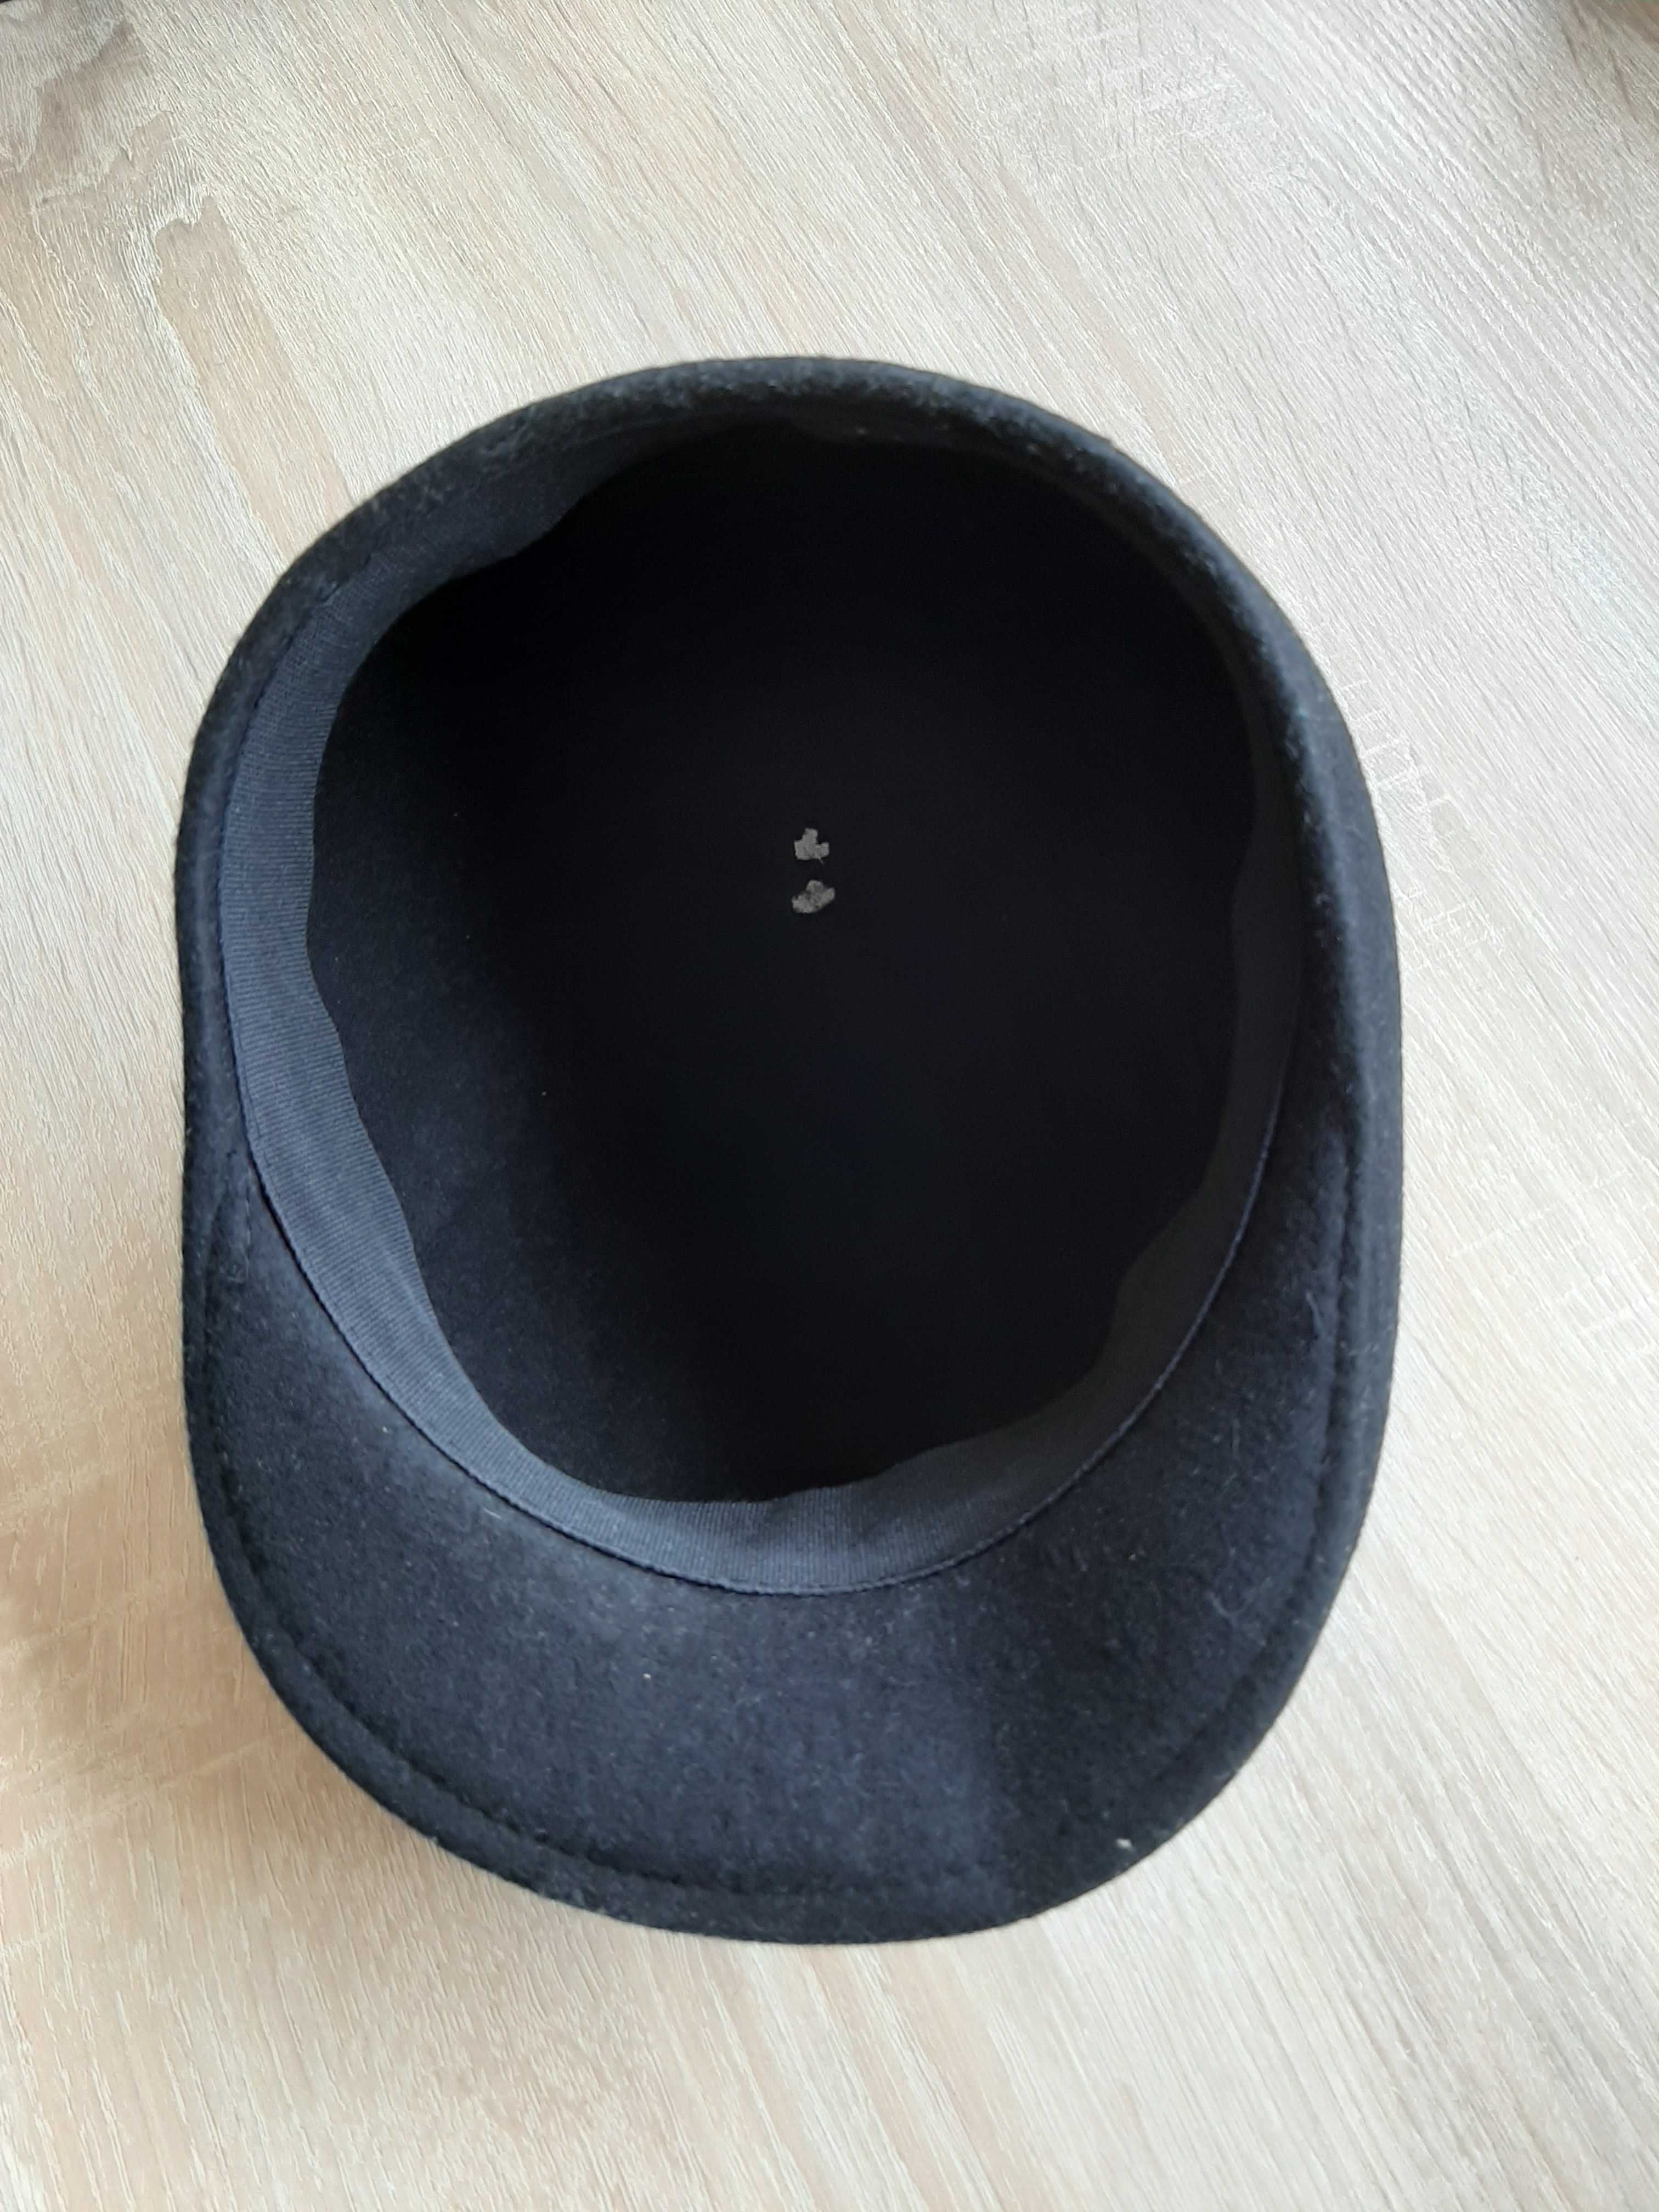 Șapcă( pălărie) din fetru nouă